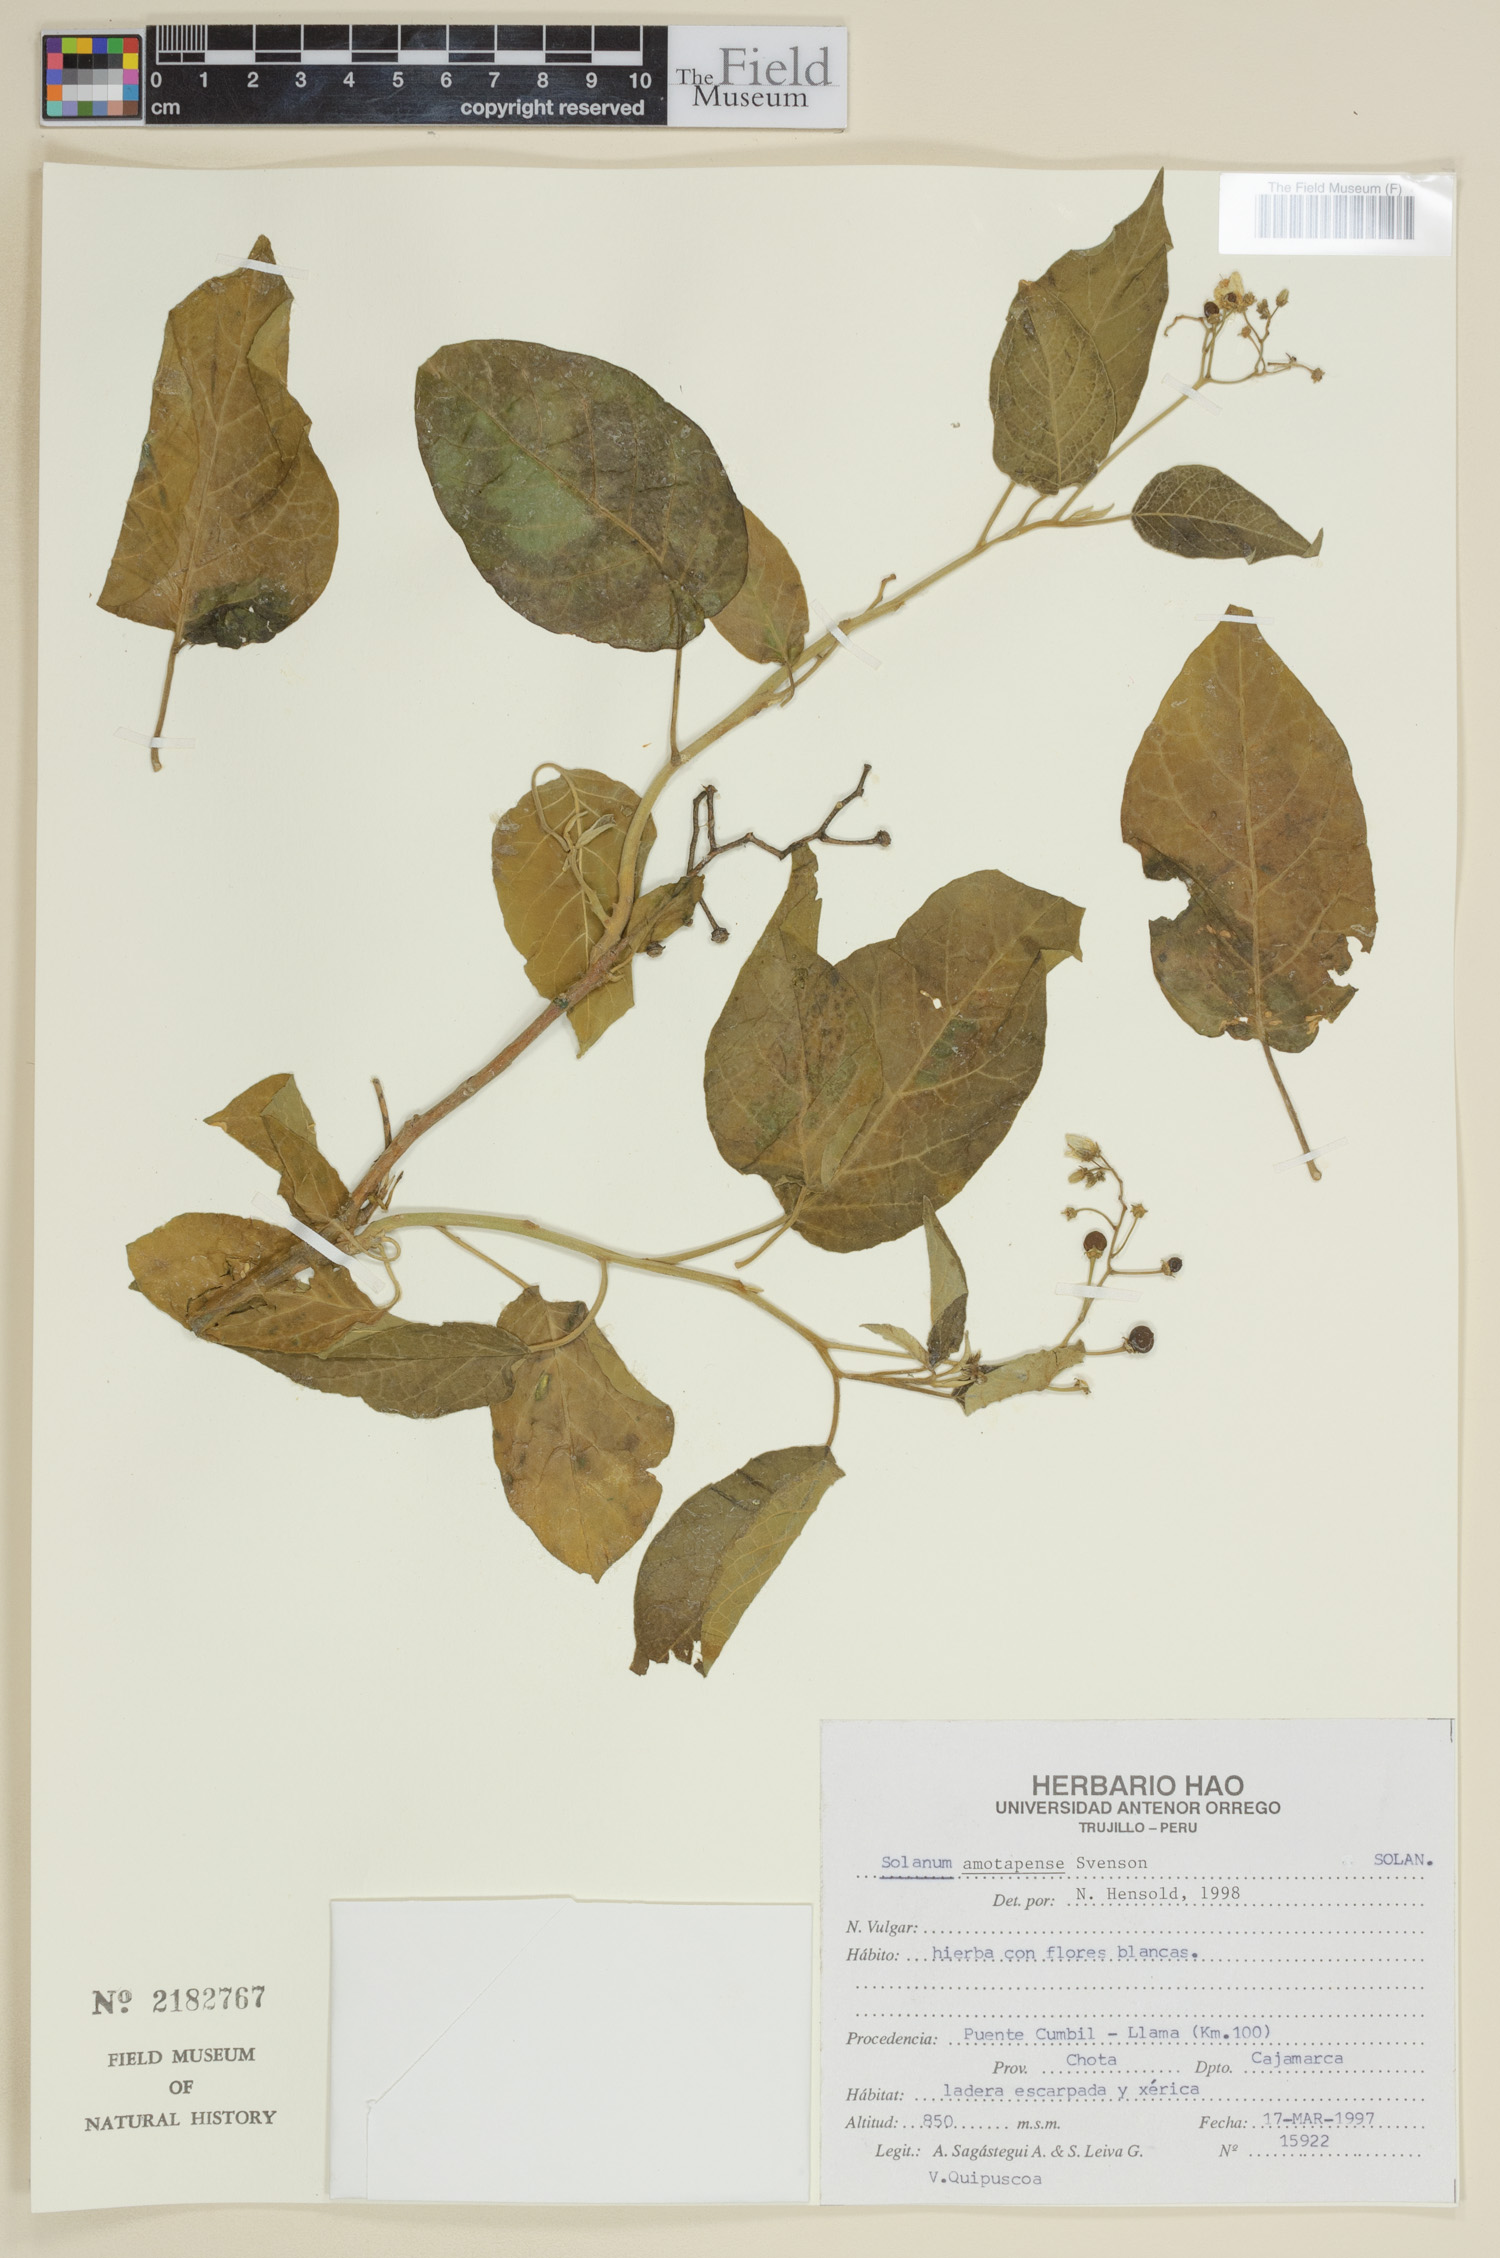 Solanum amotapense image